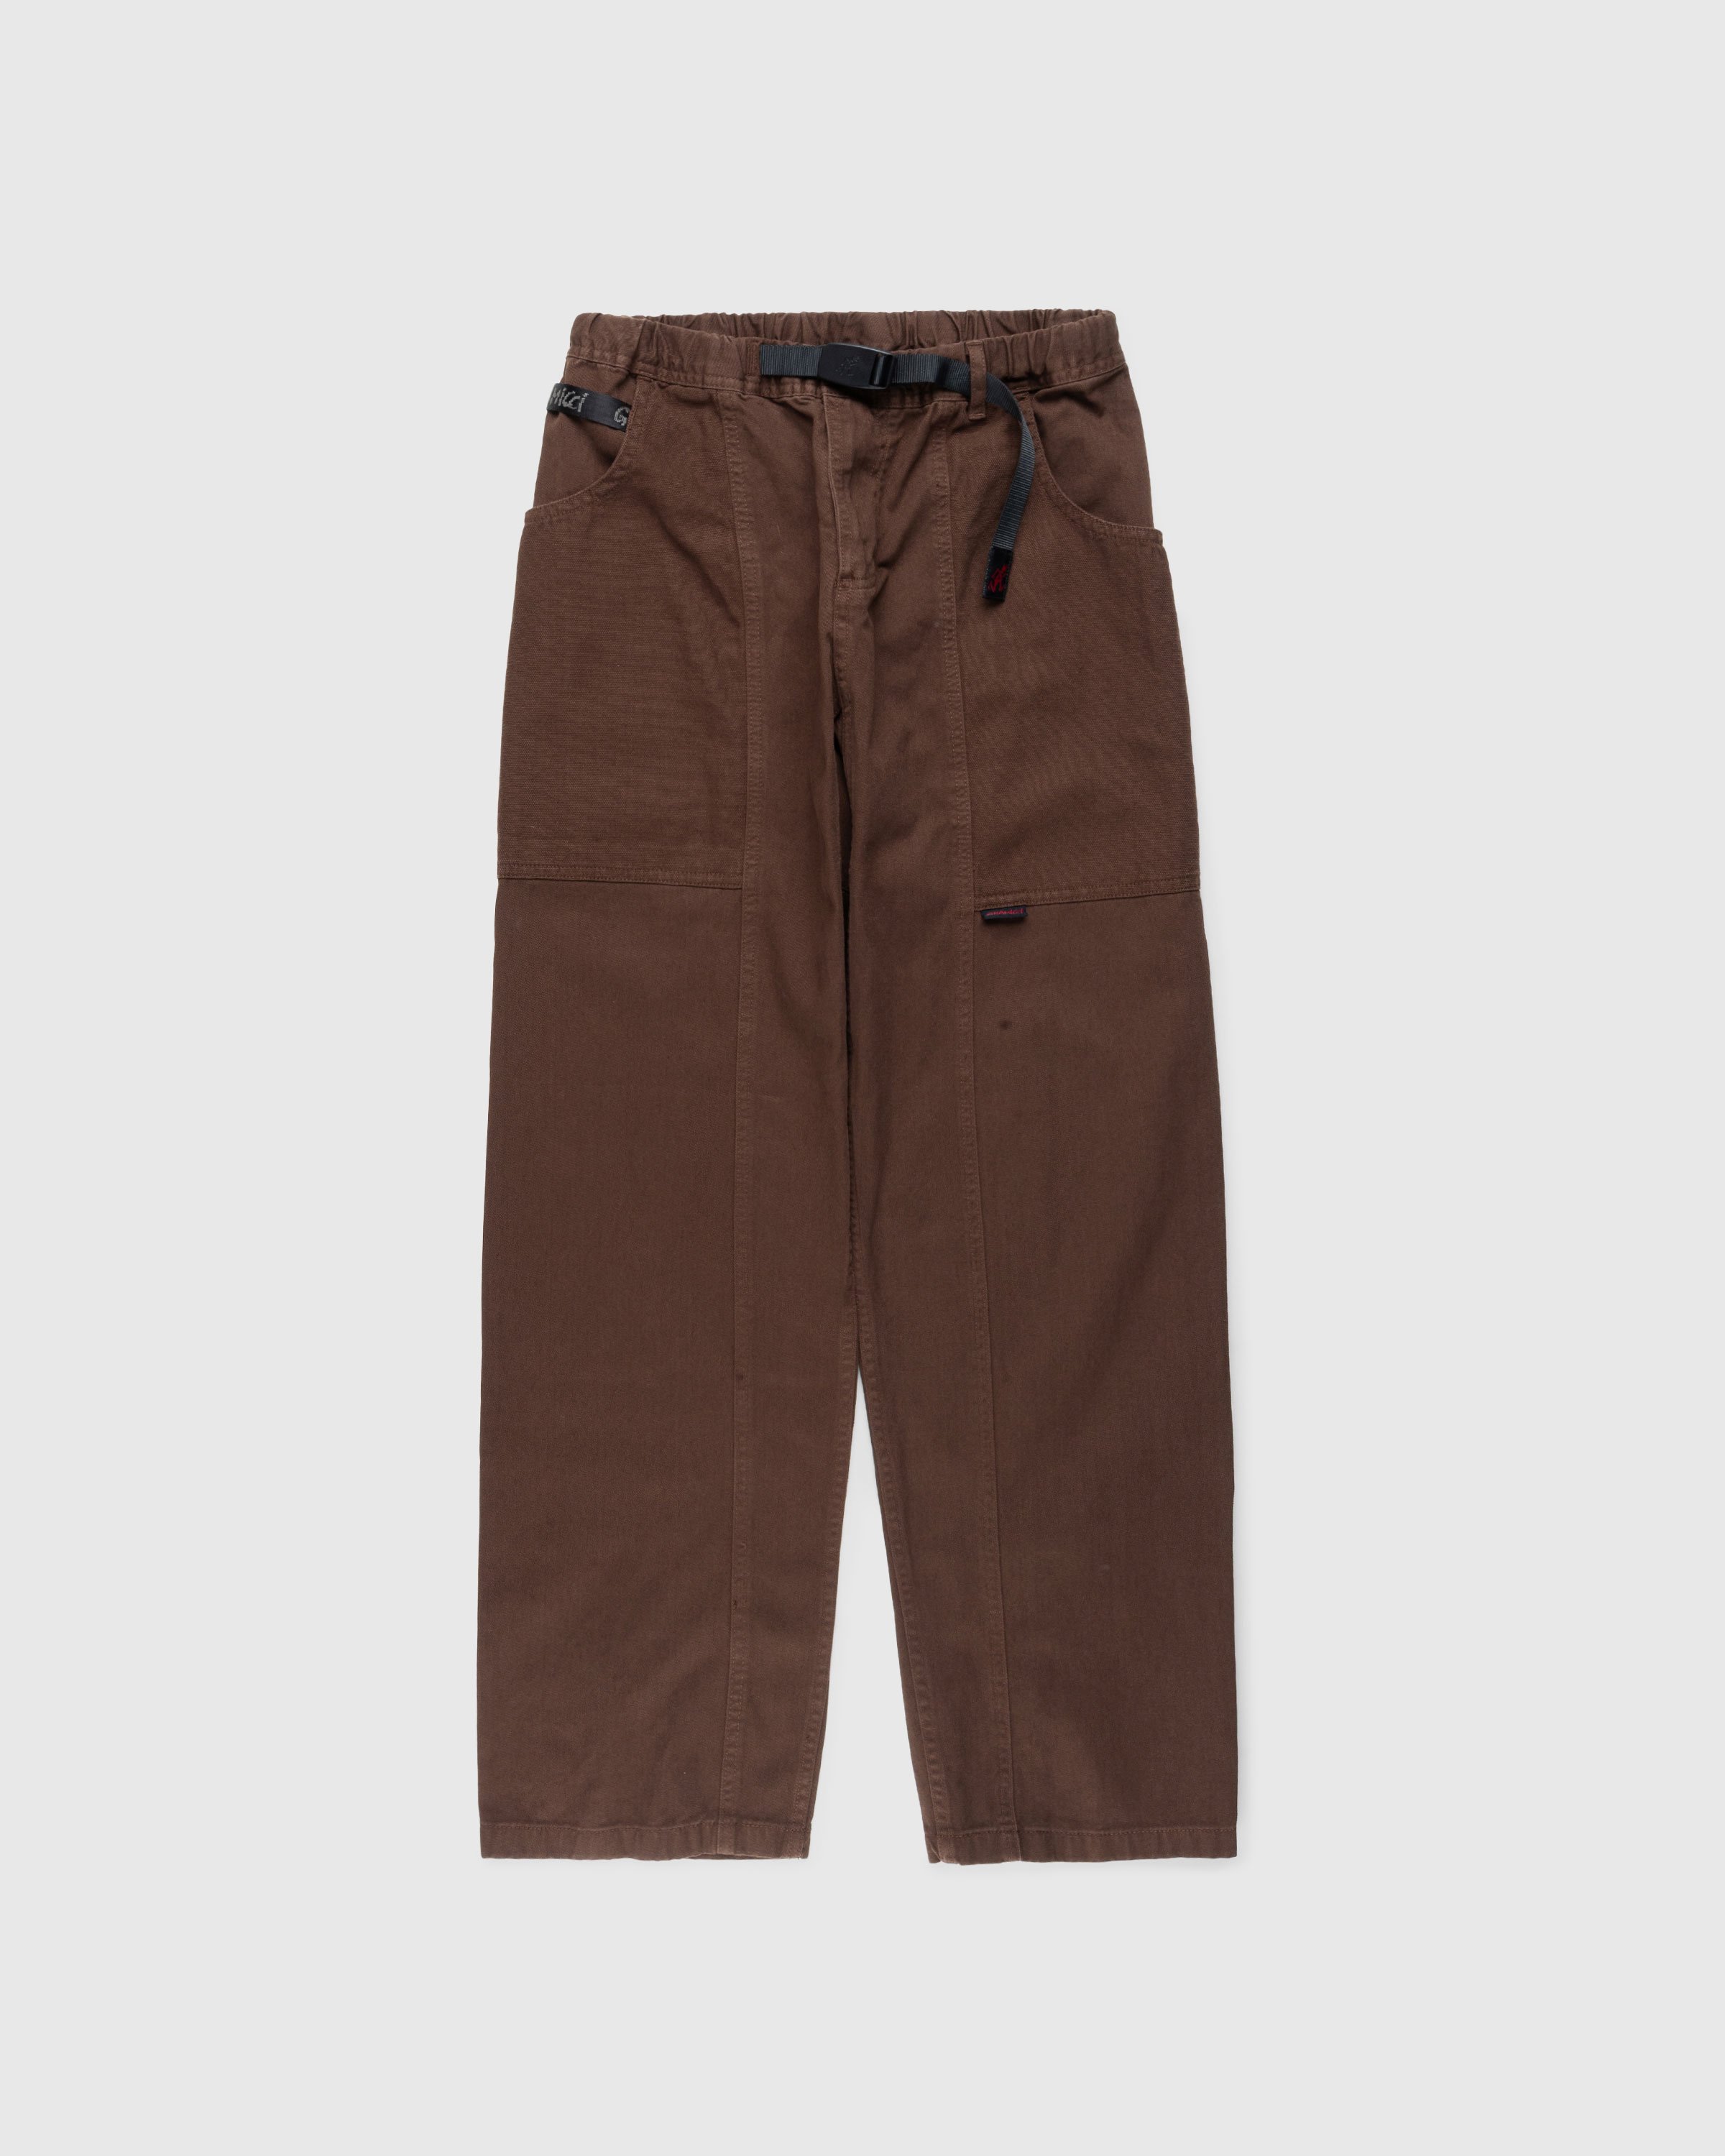 Gramicci - GADGET PANT - Clothing - Brown - Image 1